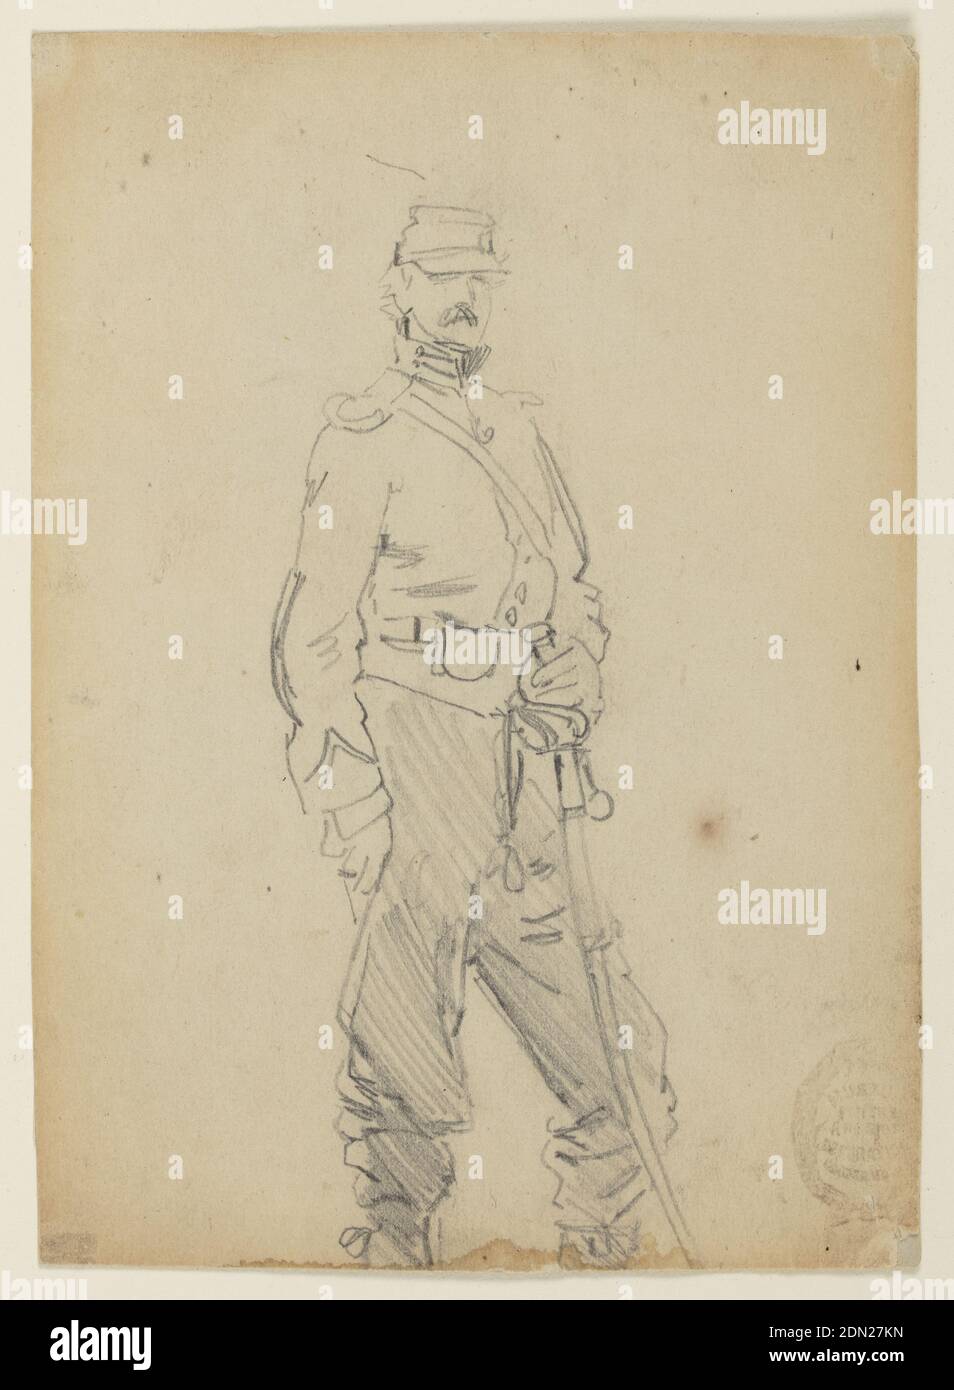 Oficial permanente, Winslow Homer, norteamericano, 1836–1910, grafito sobre papel crema, Vista vertical de un oficial parado en la facilidad., EE.UU., 1862, figuras, dibujo Foto de stock